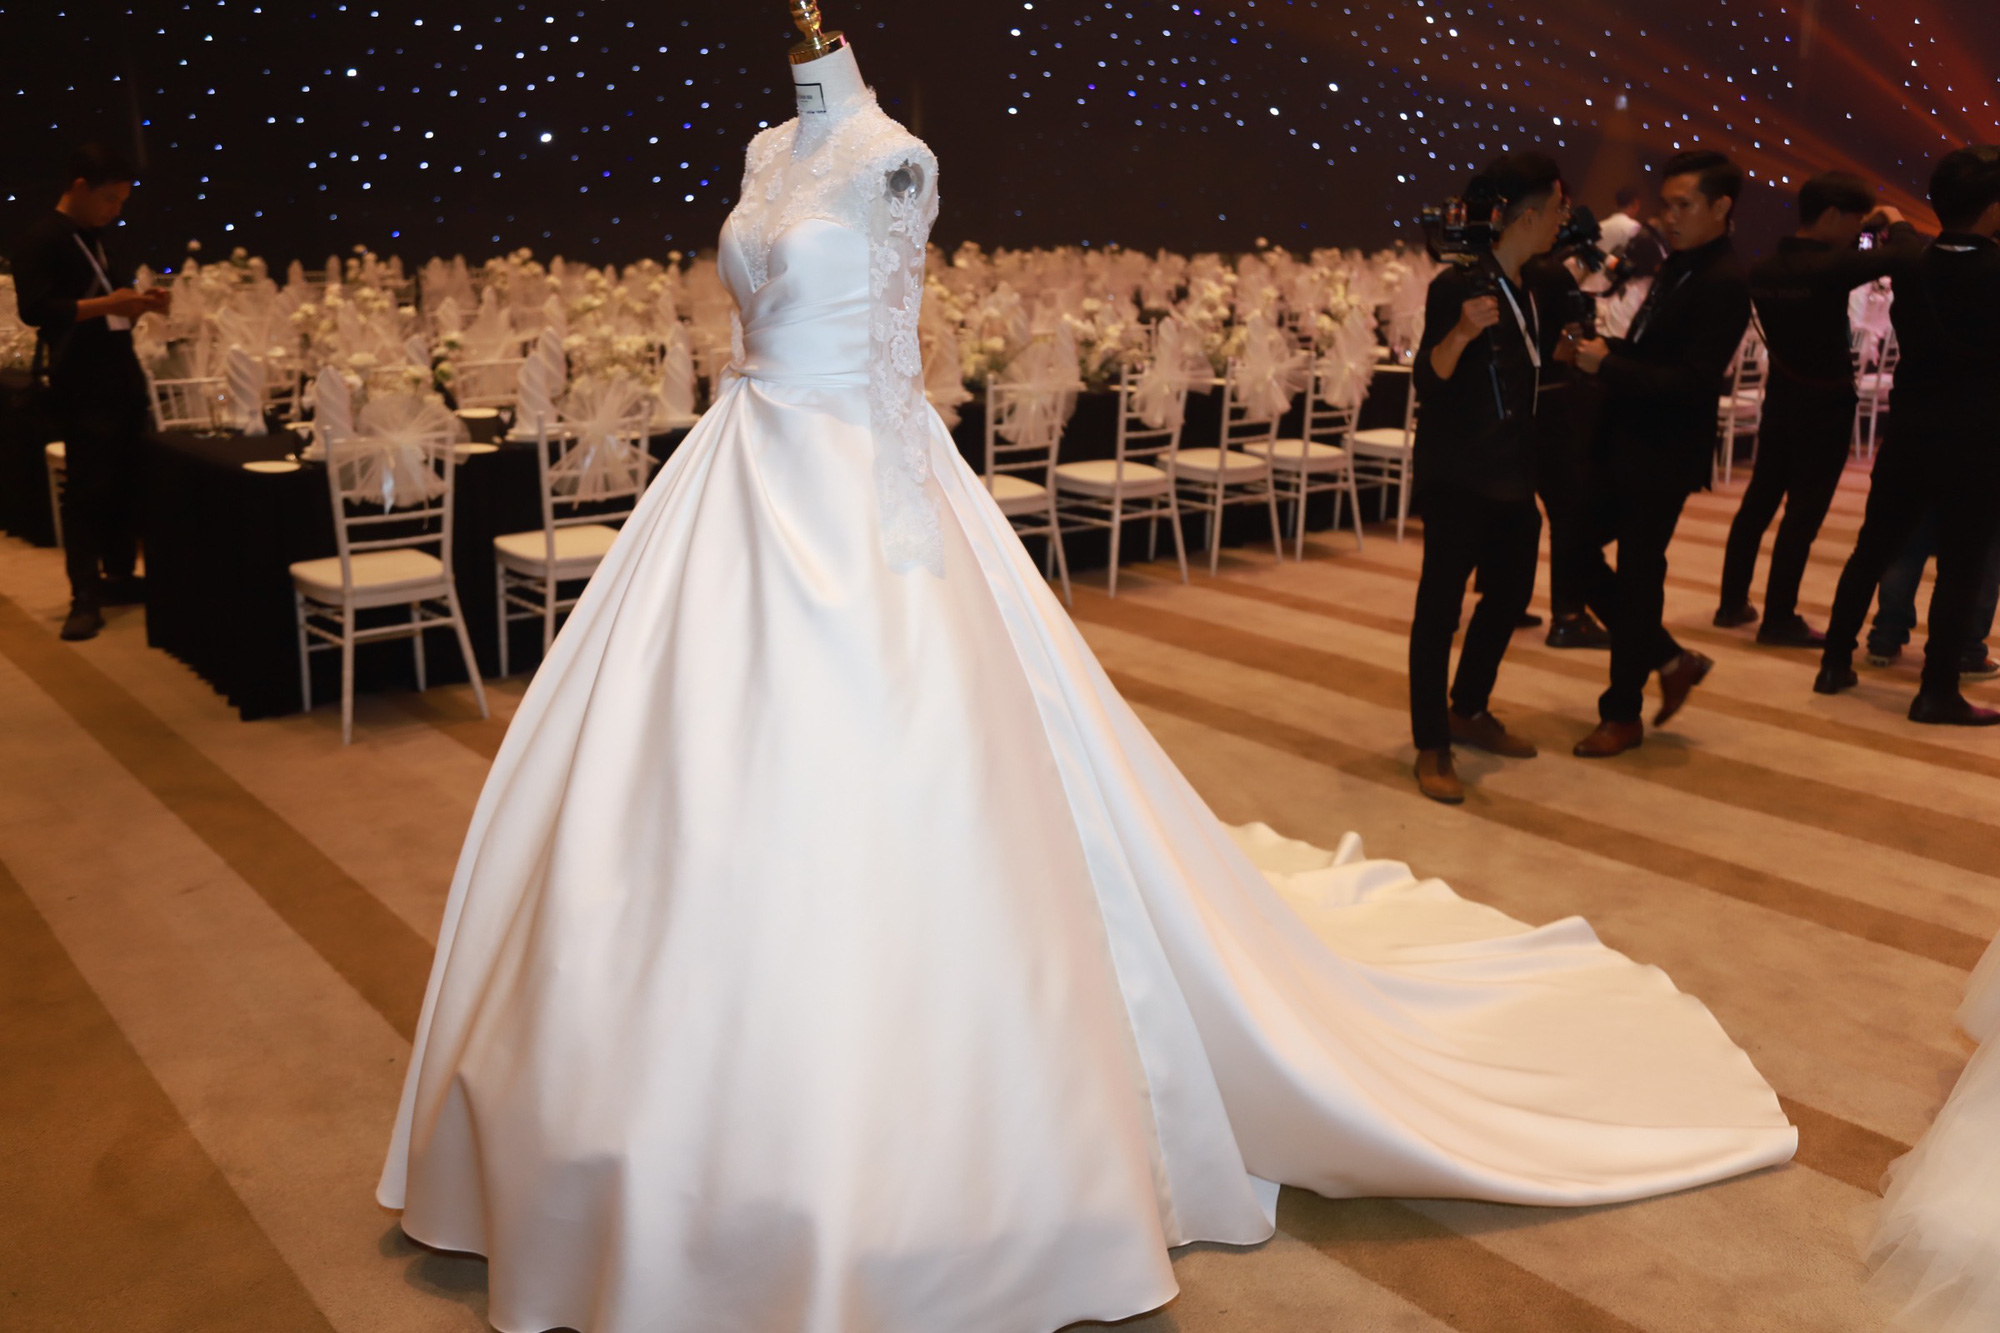 Ngắm trọn 3 chiếc váy cưới của Phương Trinh Jolie trong ngày trọng đại, gây choáng nhất là màn khoe vòng 1 táo bạo - Ảnh 4.